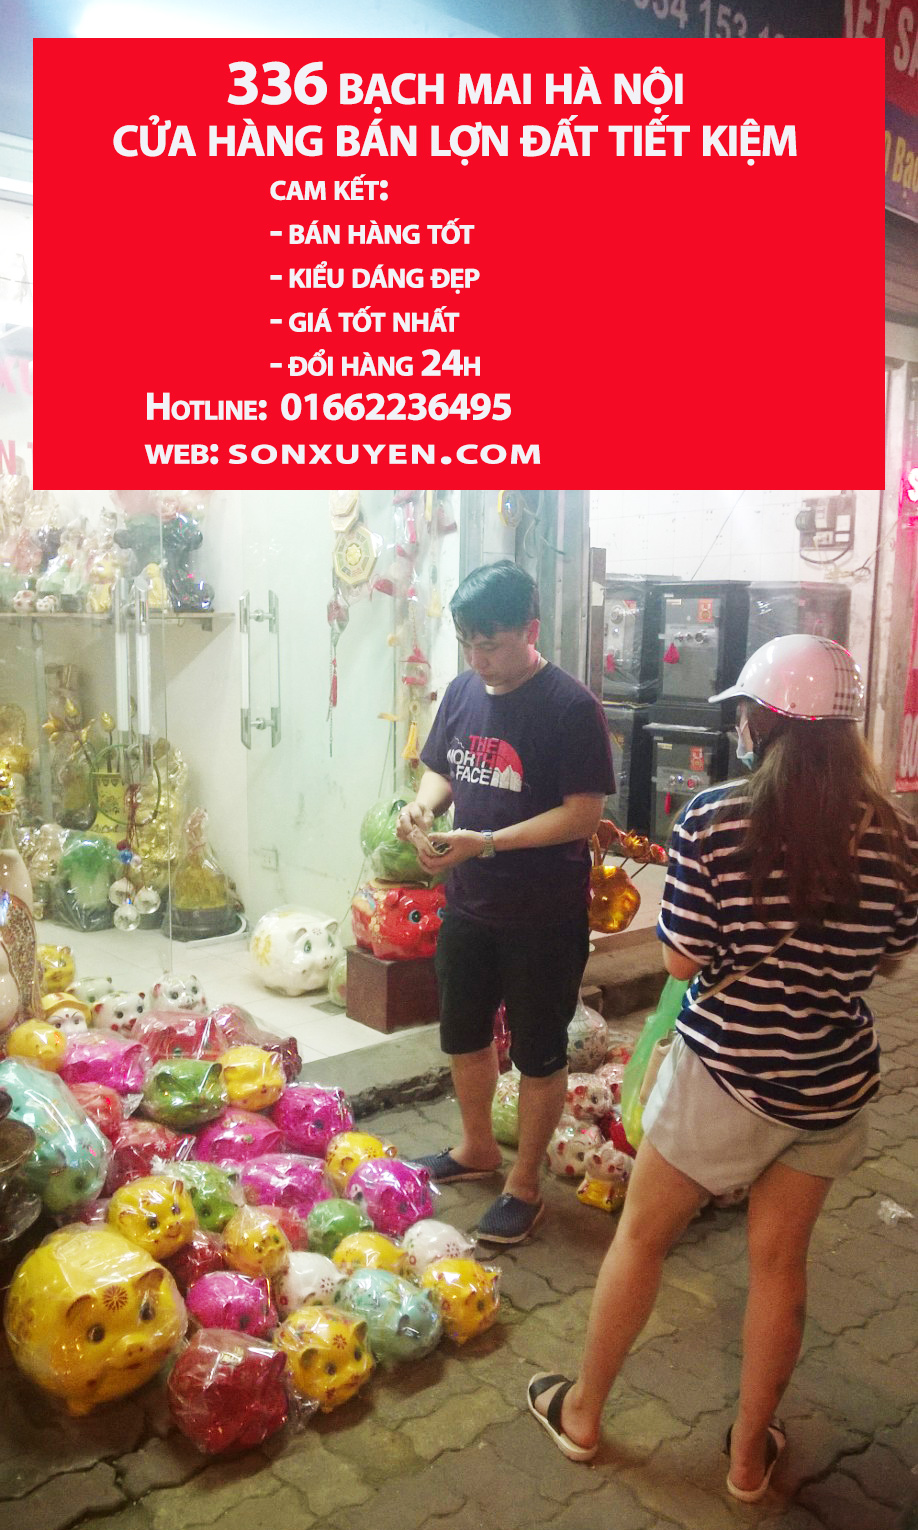 Cửa hàng bán lợn đất tiết kiệm 336 Bạch Mai, Hà Nội